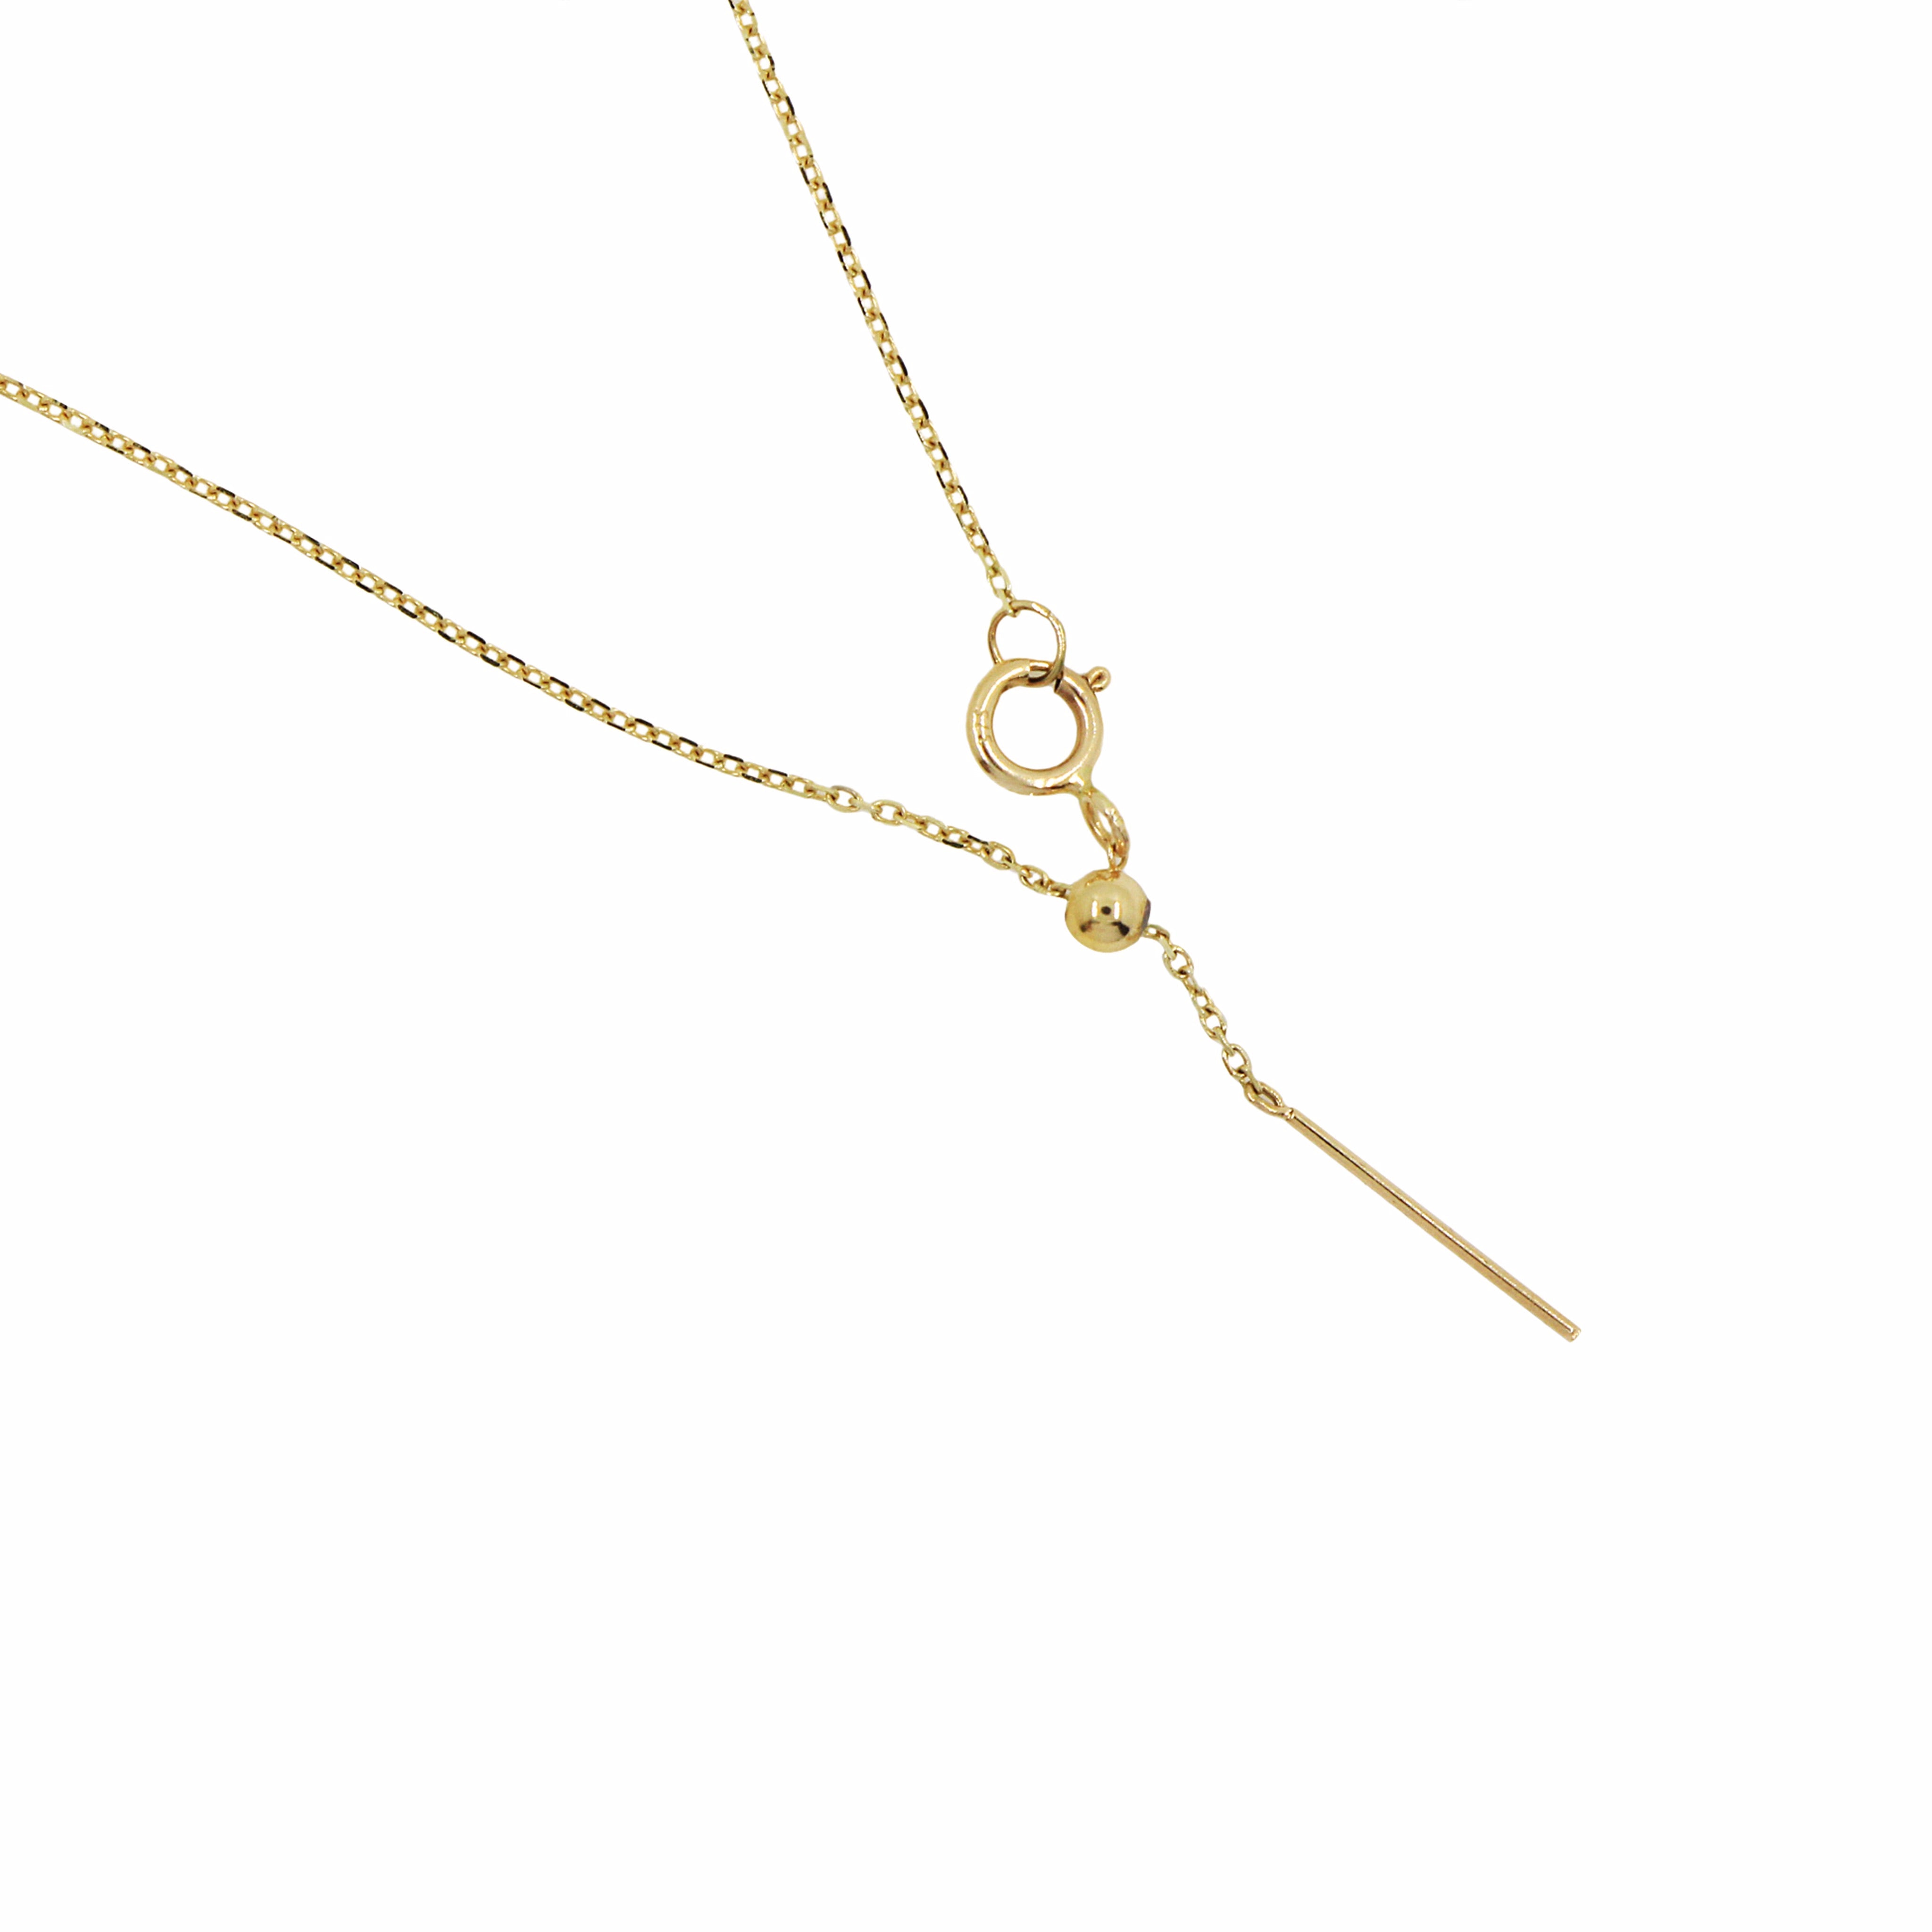 Discover Gosia Orlowska's Gold Necklace